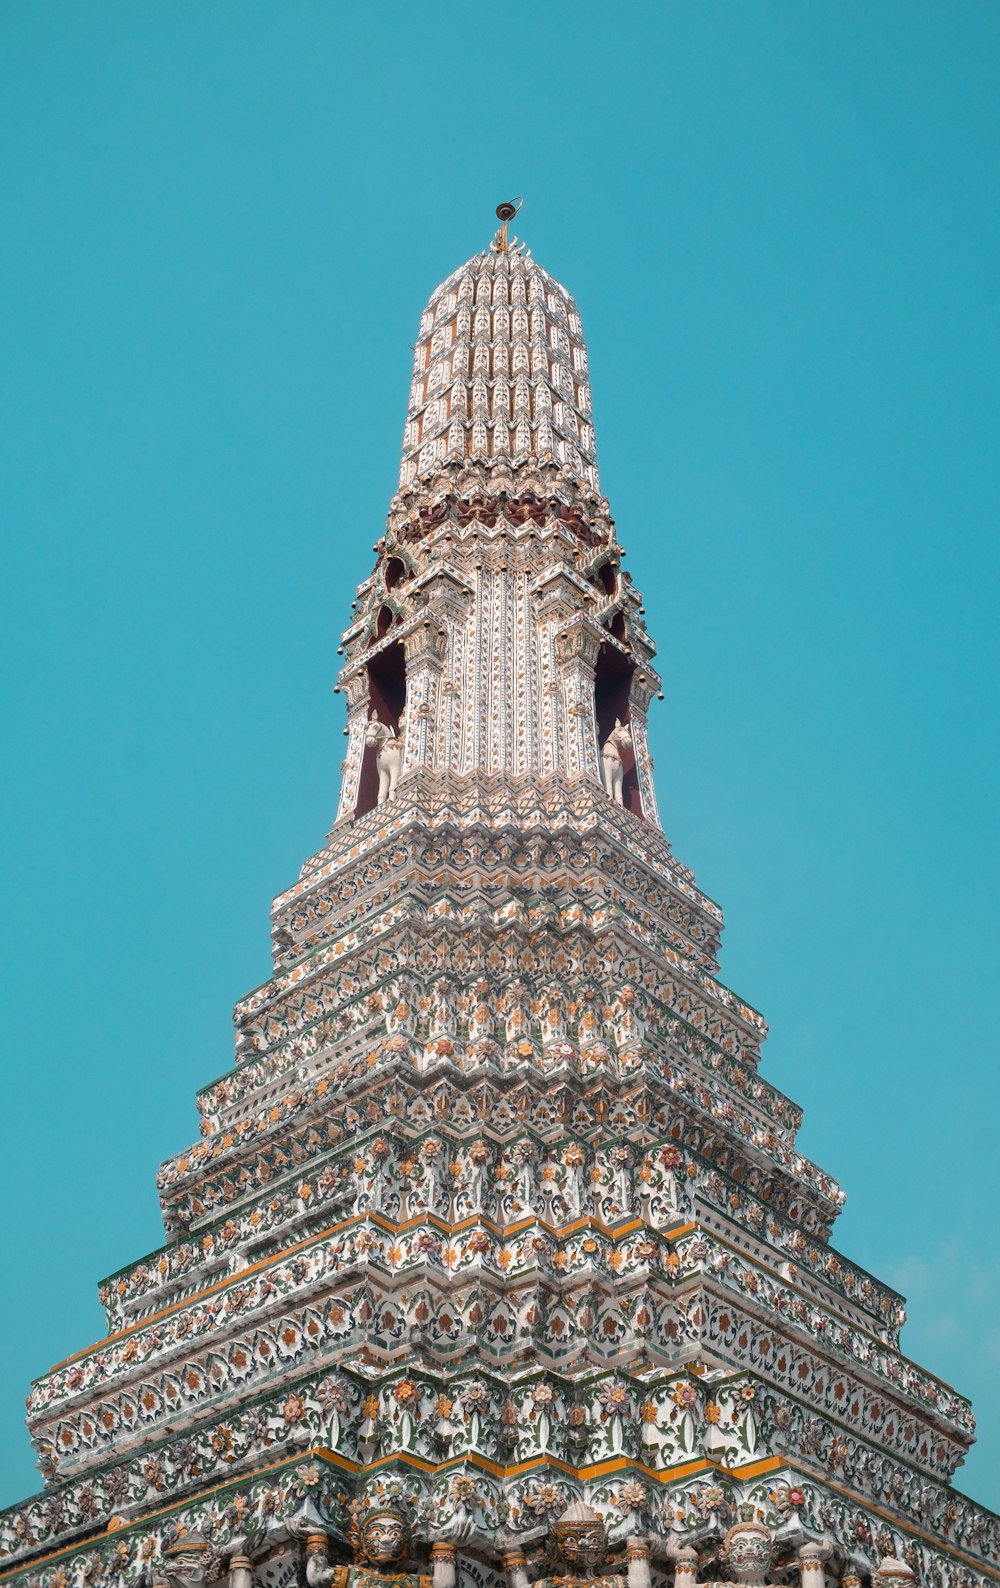 Una torre alta y ornamentada